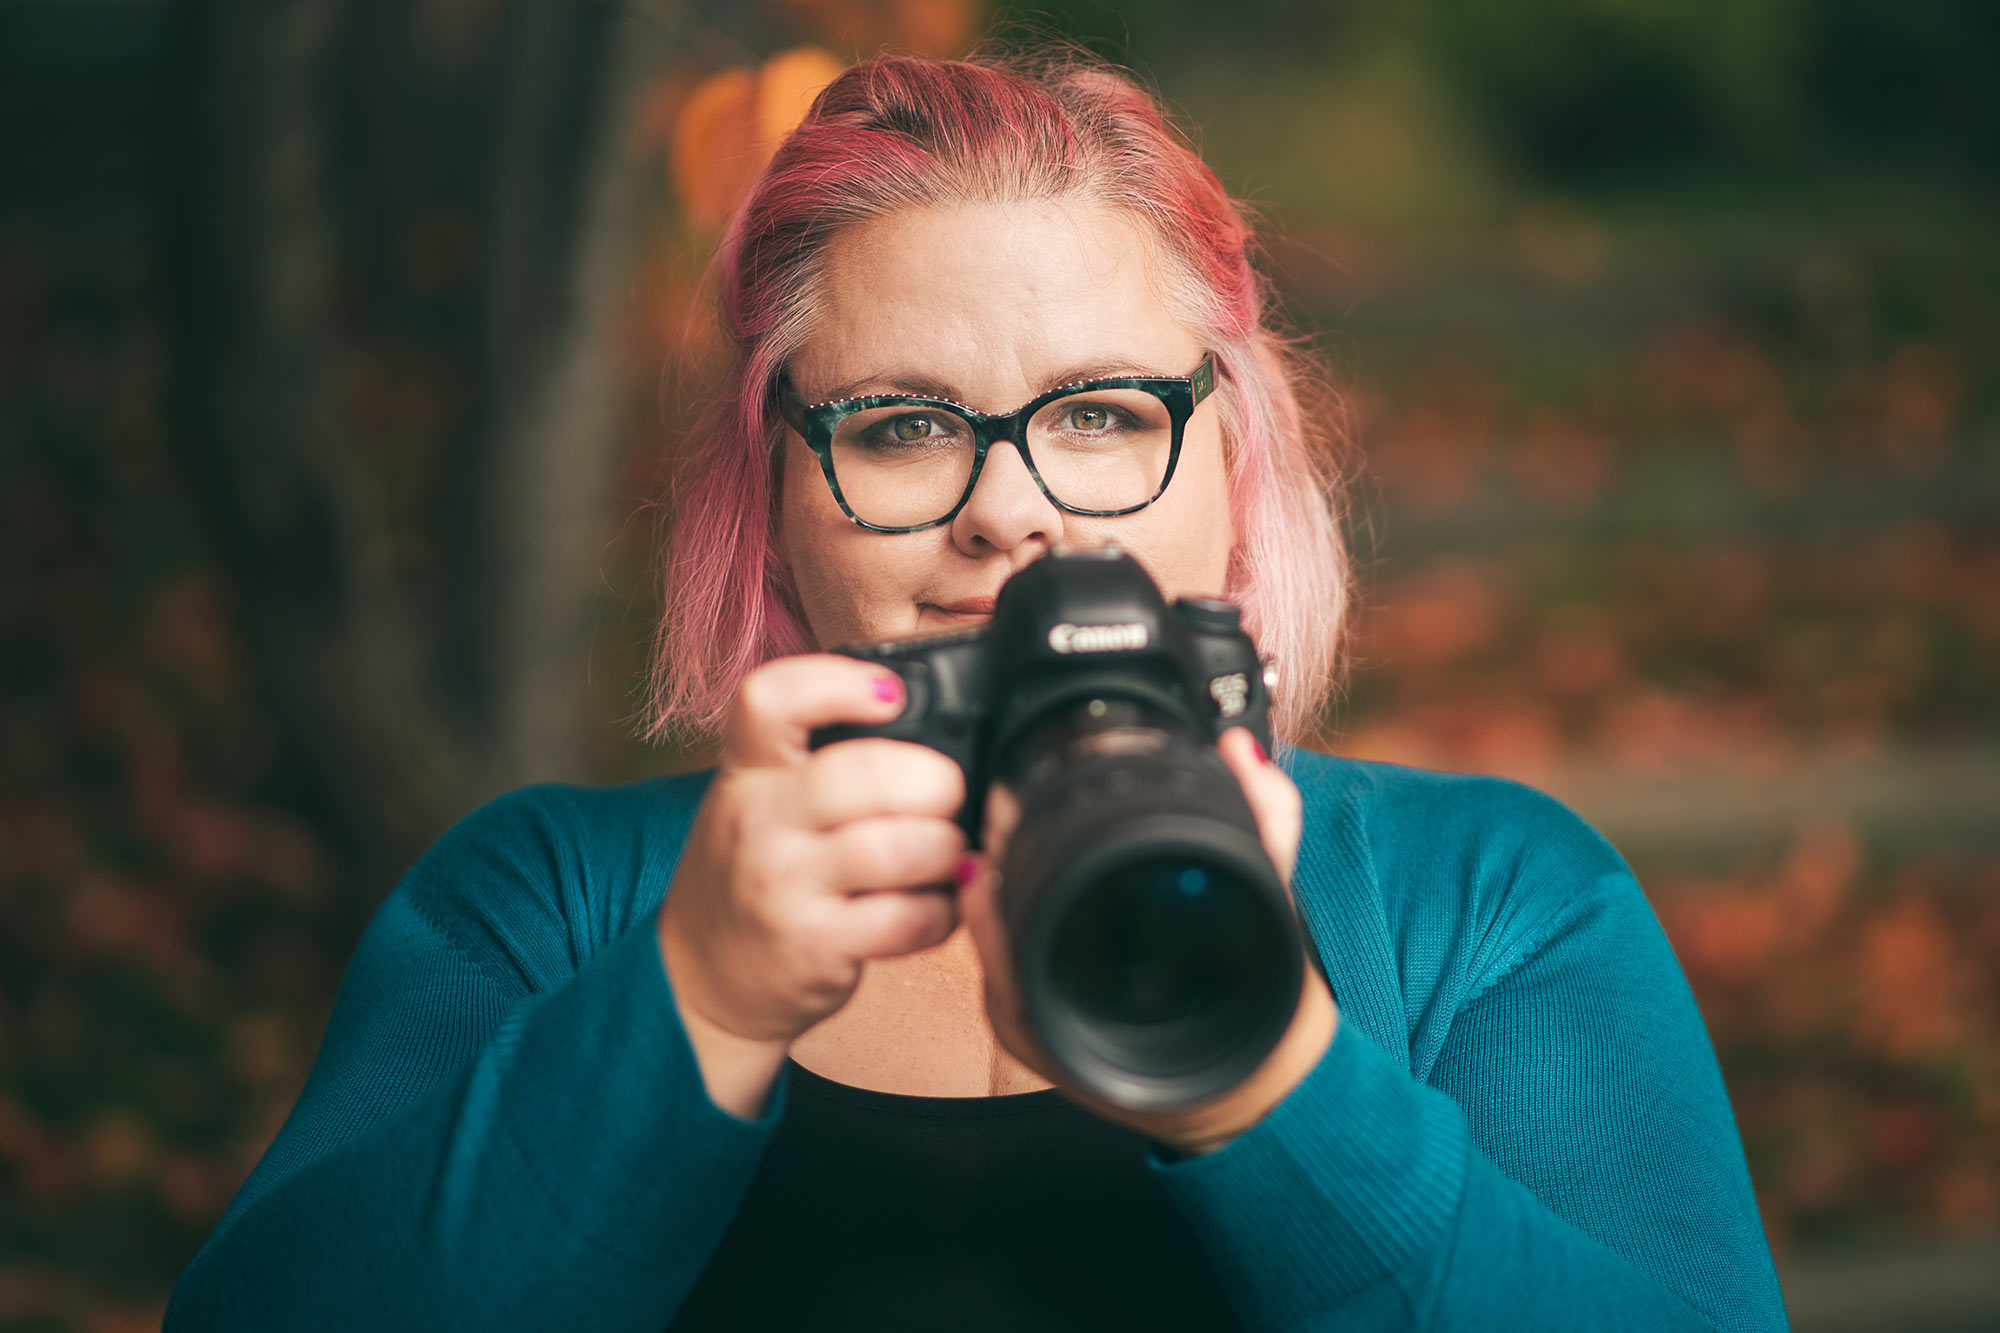 Fotograf Linda Holmkratz tittar fram bakom sin kamera.